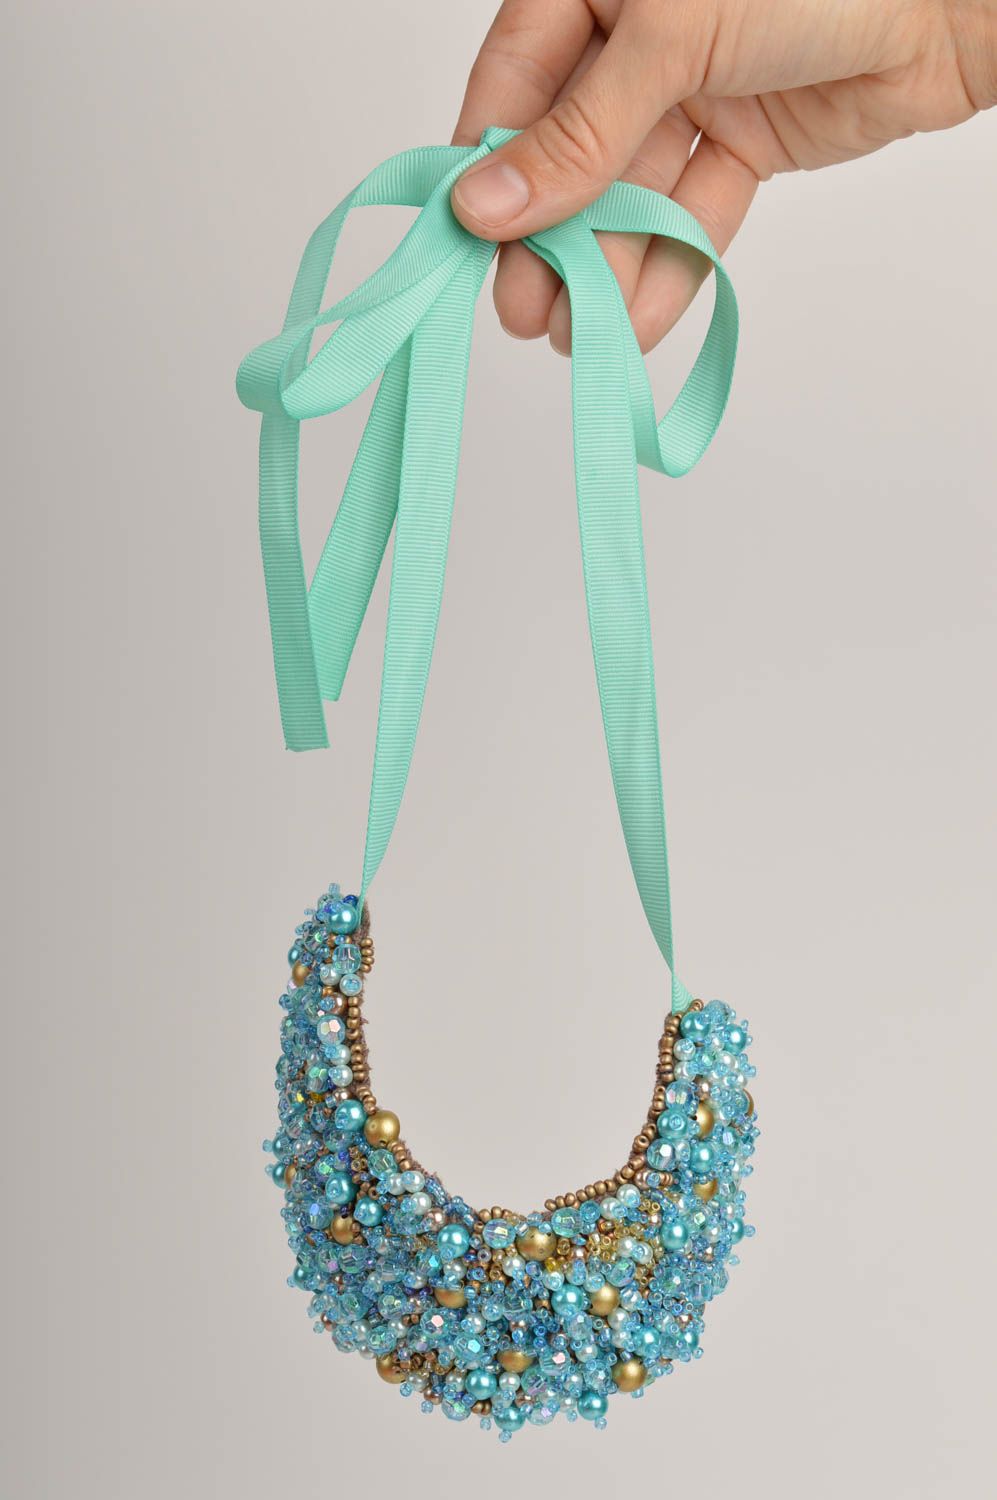 Колье из бисера украшение ручной работы ожерелье из бисера голубое на ленте фото 2